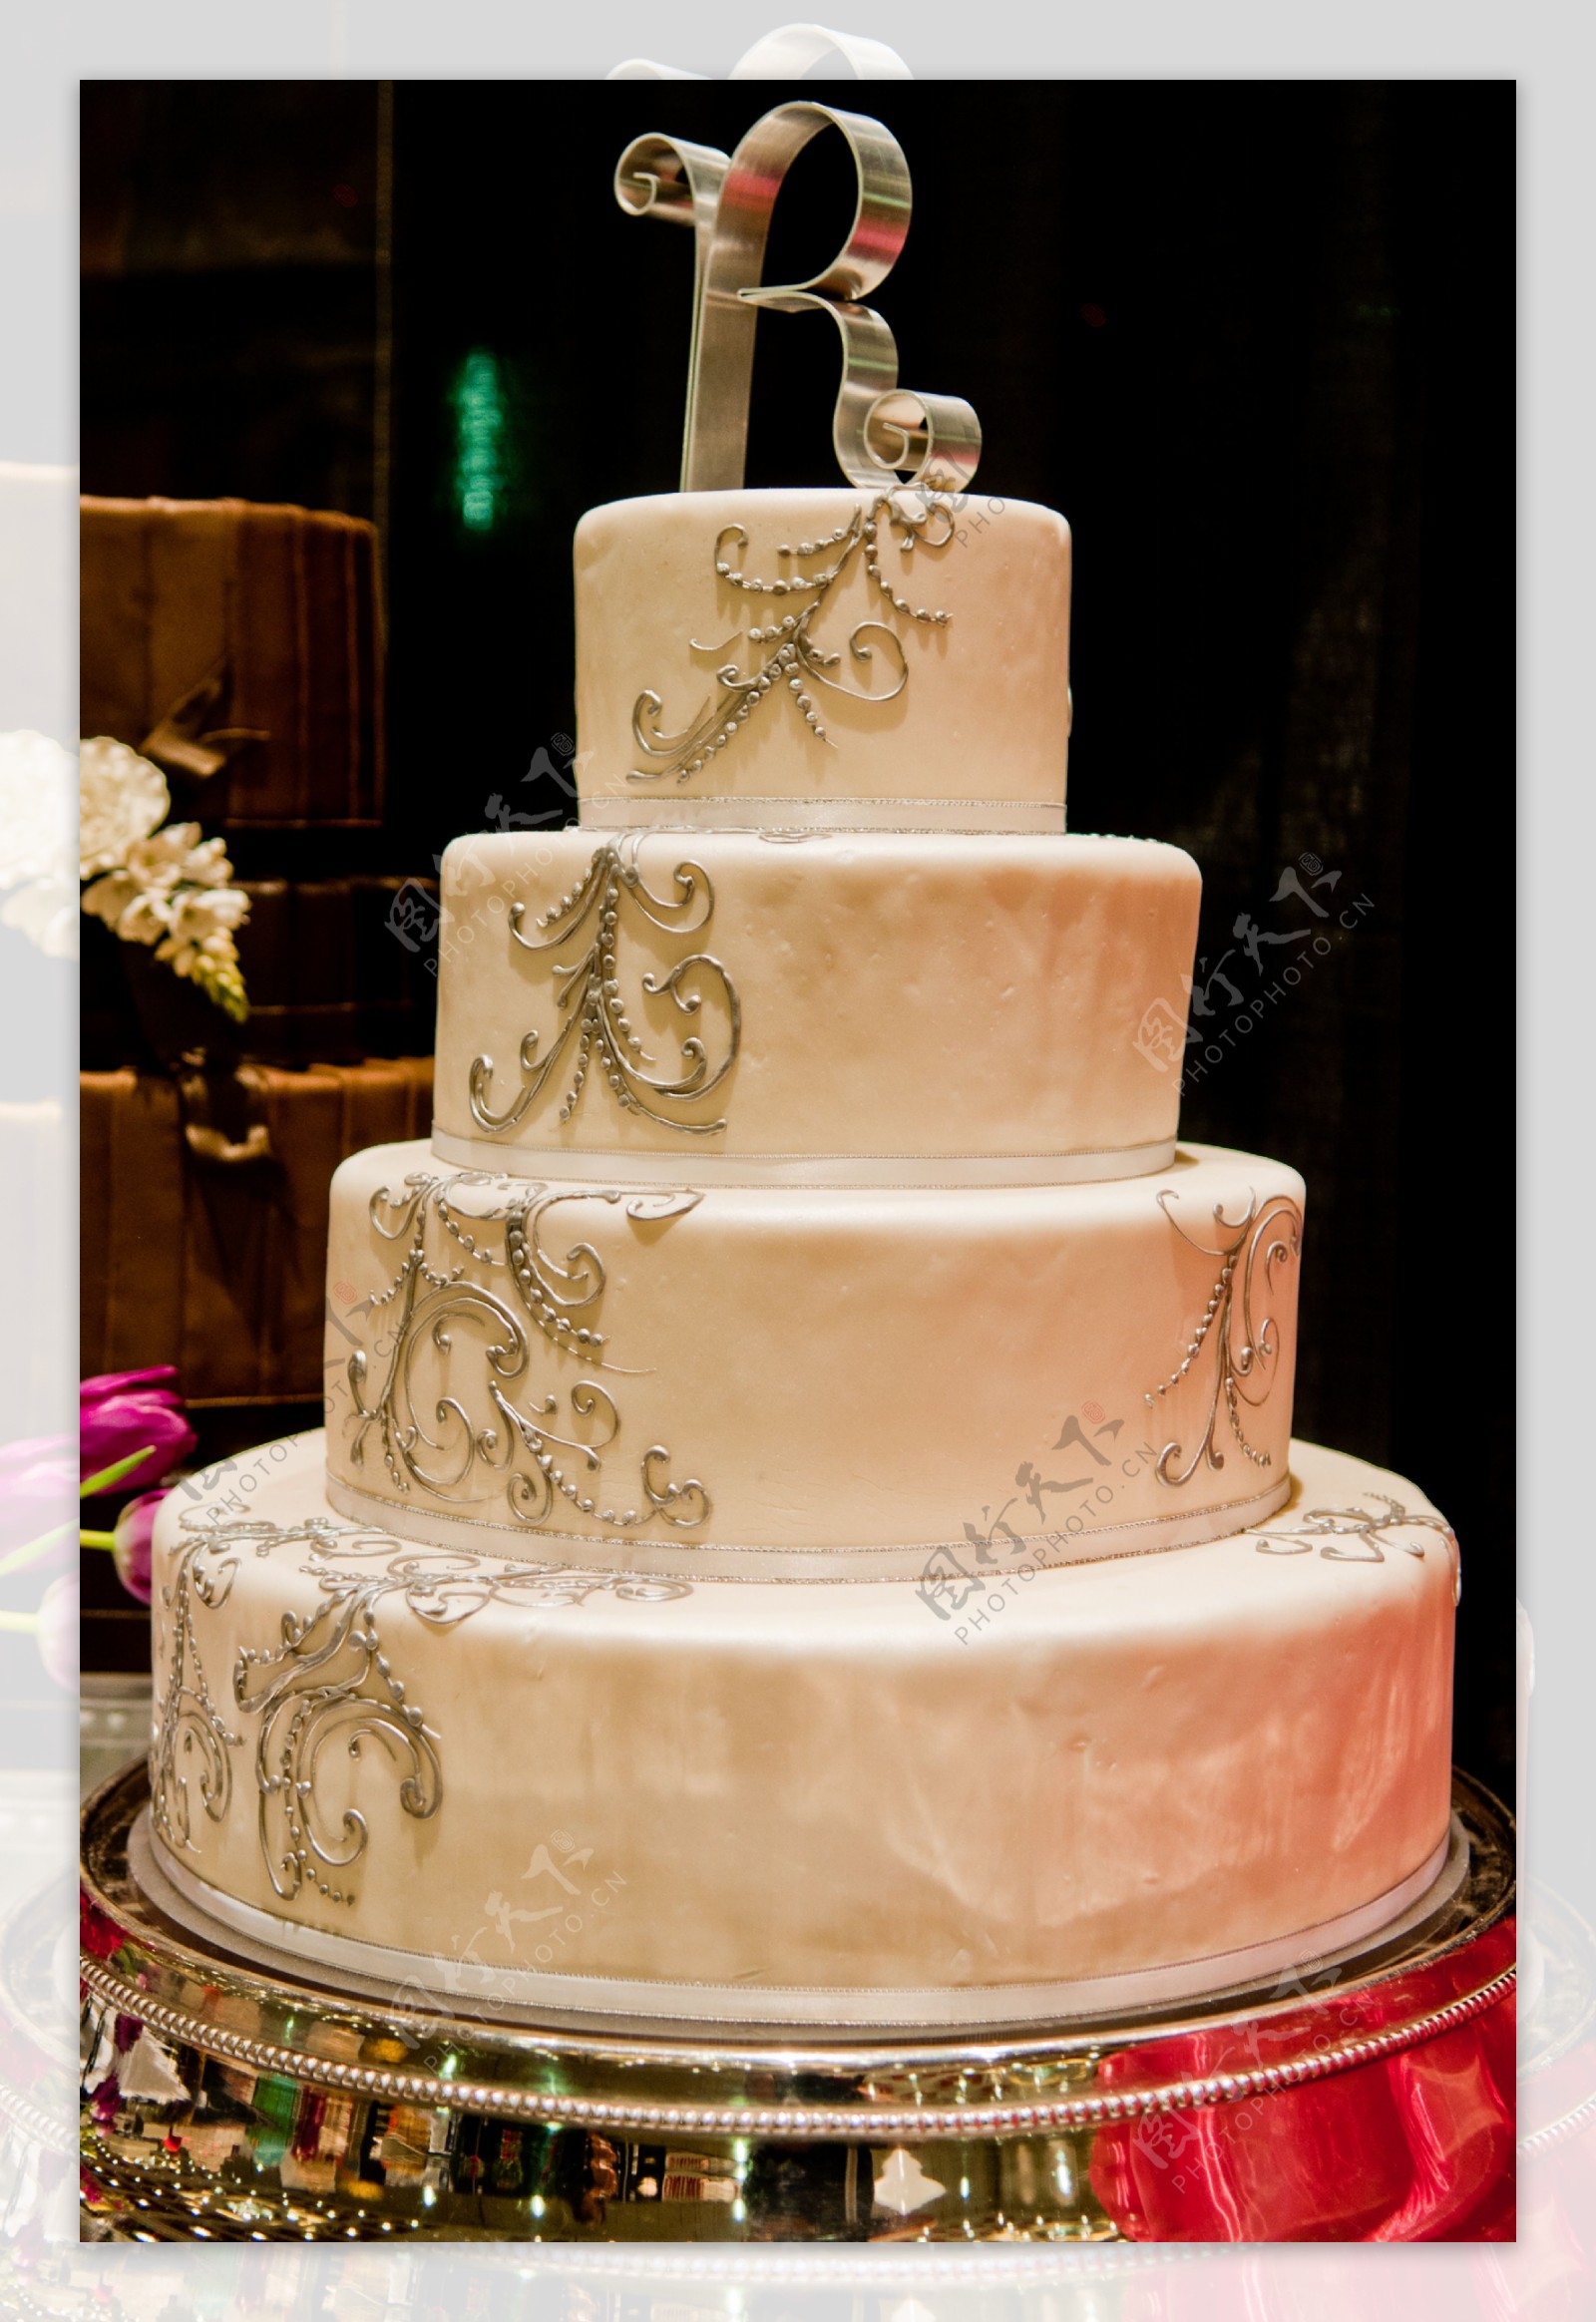 【婚礼蛋糕】浪漫婚礼蛋糕,结婚蛋糕,结婚纪念日蛋糕_PClady百科_太平洋时尚网